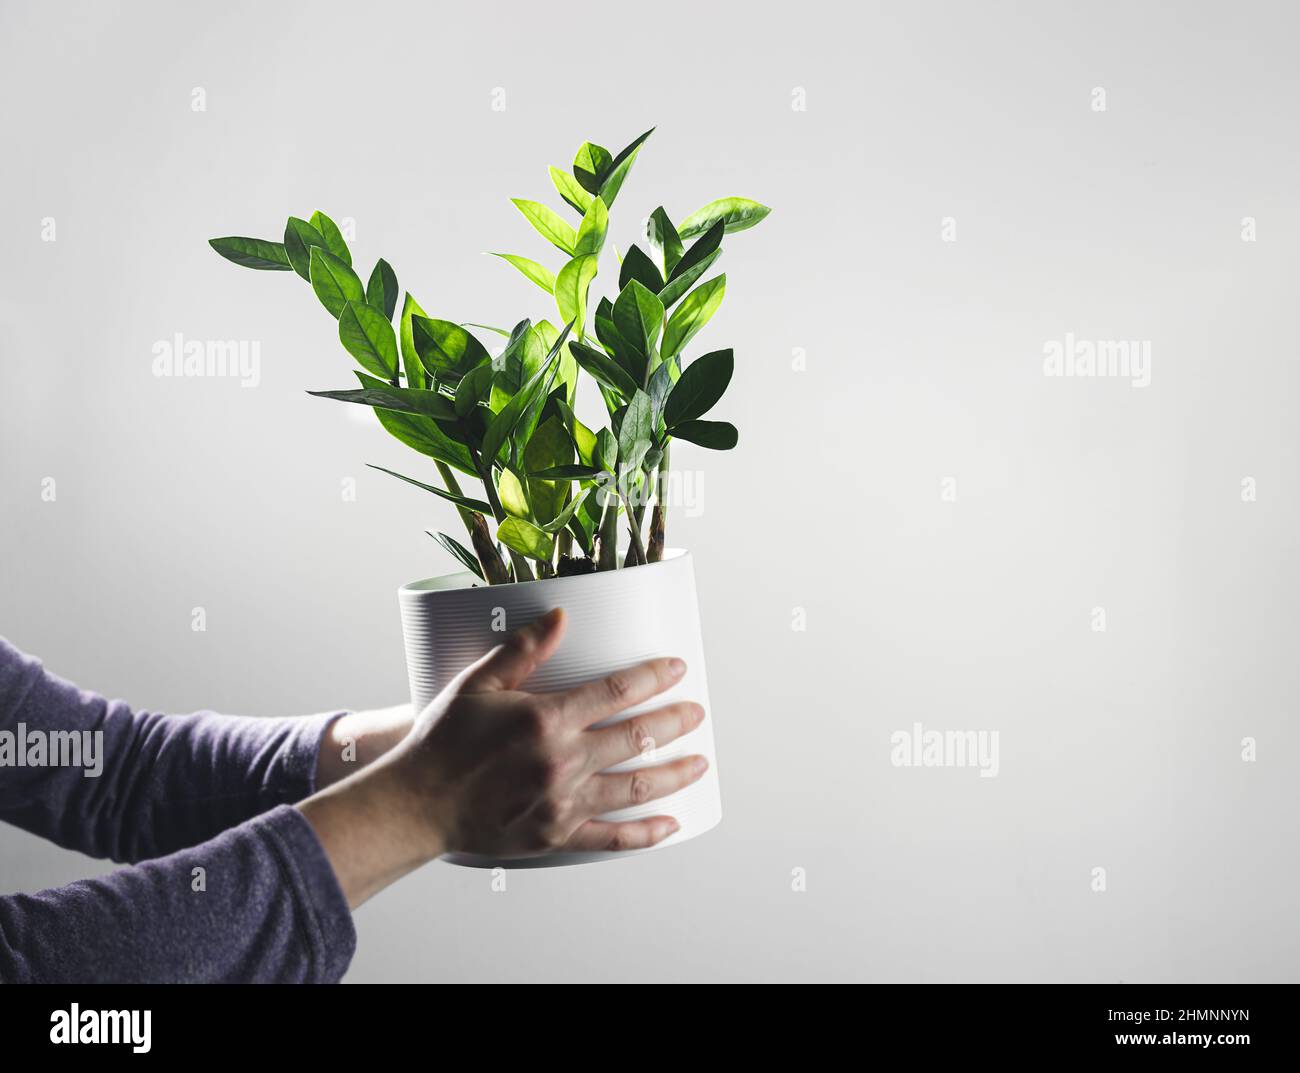 Hände halten zamioculcas, oder zamiifolia zz Pflanze in einem weißen Topf, Home Gartenarbeit und Pflanzen Home Dekoration Konzept, kopieren Raum Stockfoto